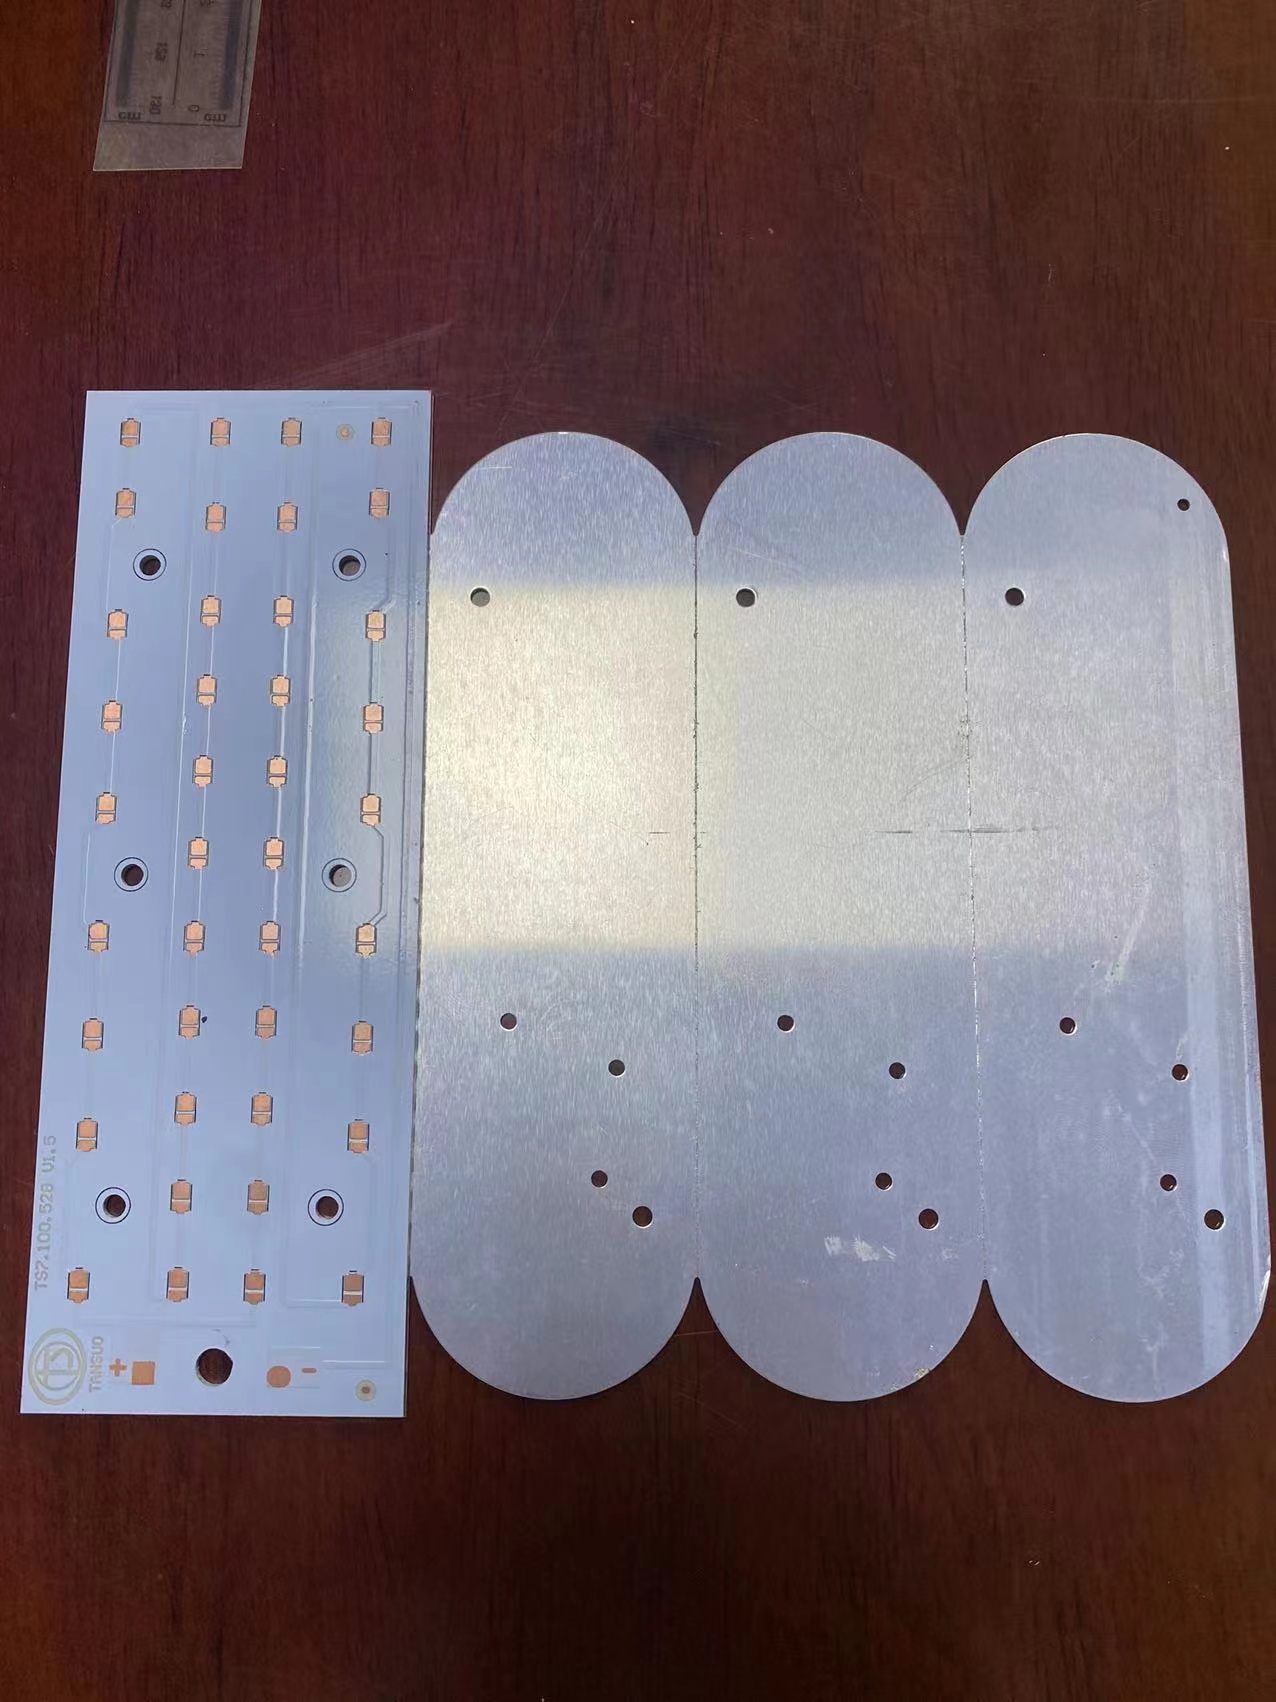 广州排线电路板生产厂家,广州排线电路板多少钱,广州排线电路板价格  LED铝基板线路板图片